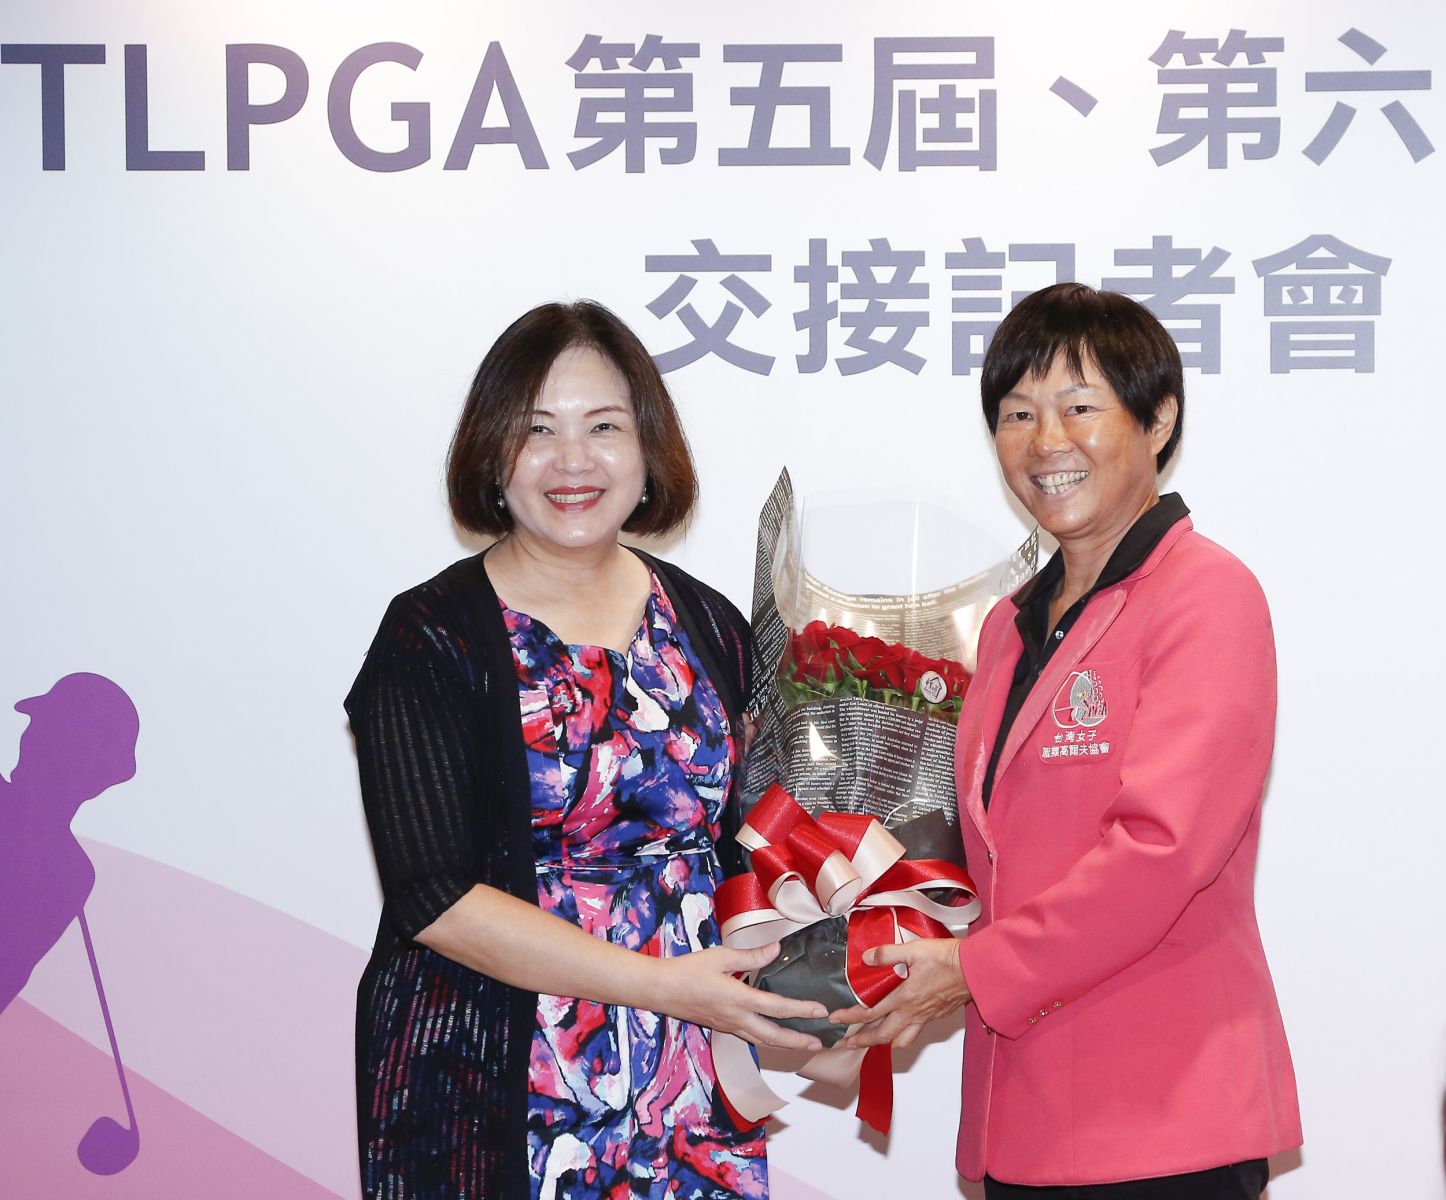 太平洋聯盟執行董事王麗珠(左)獻花給TLPGA第六屆理事長鄭美琦。